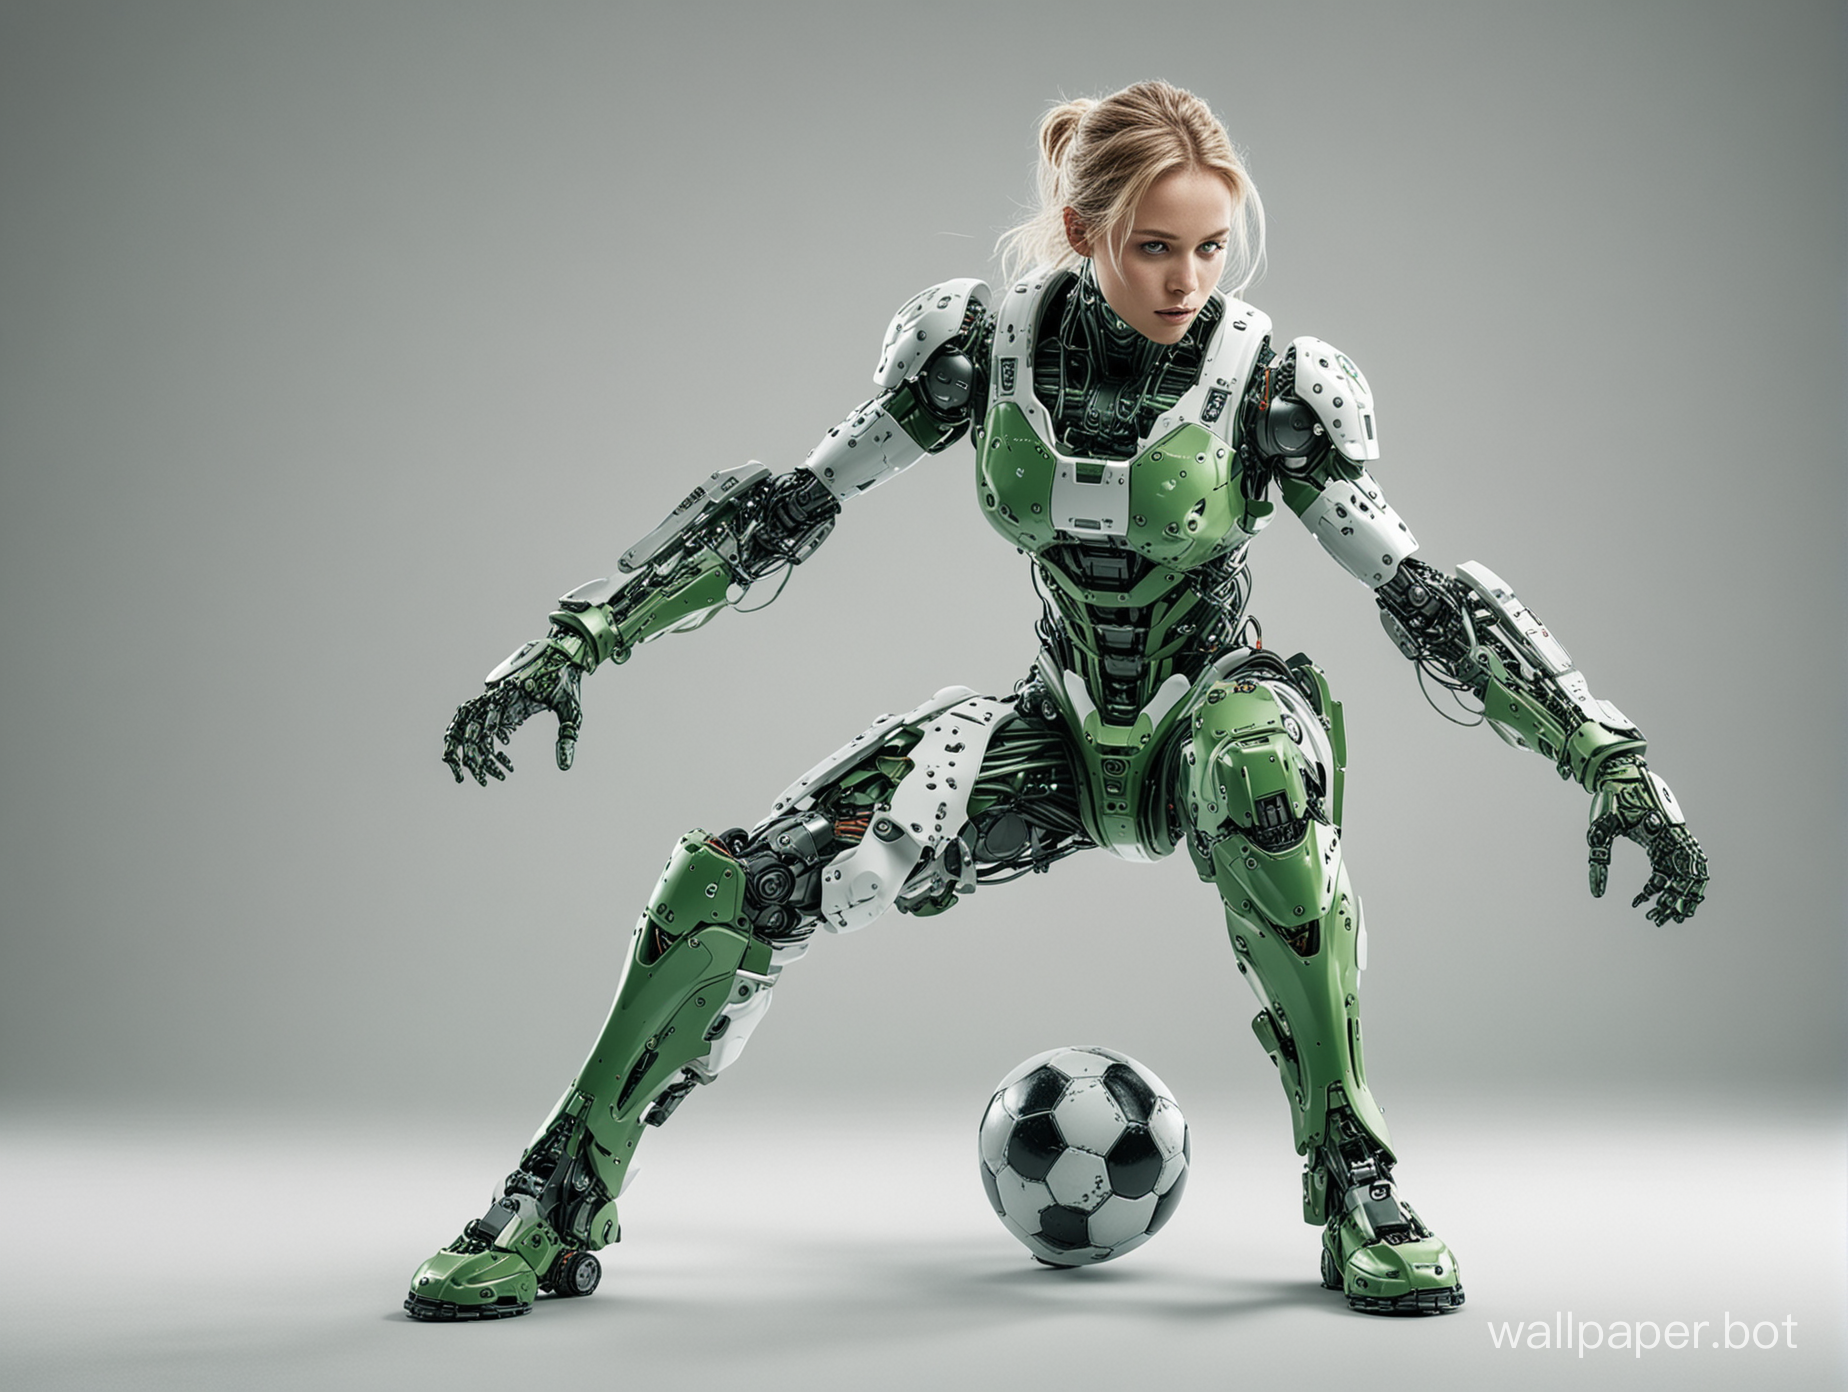 Соккер фантастическое изображение фото шедевр 20к  белый фон невероятная борьба стиль робототех одежда в зеленых тонах